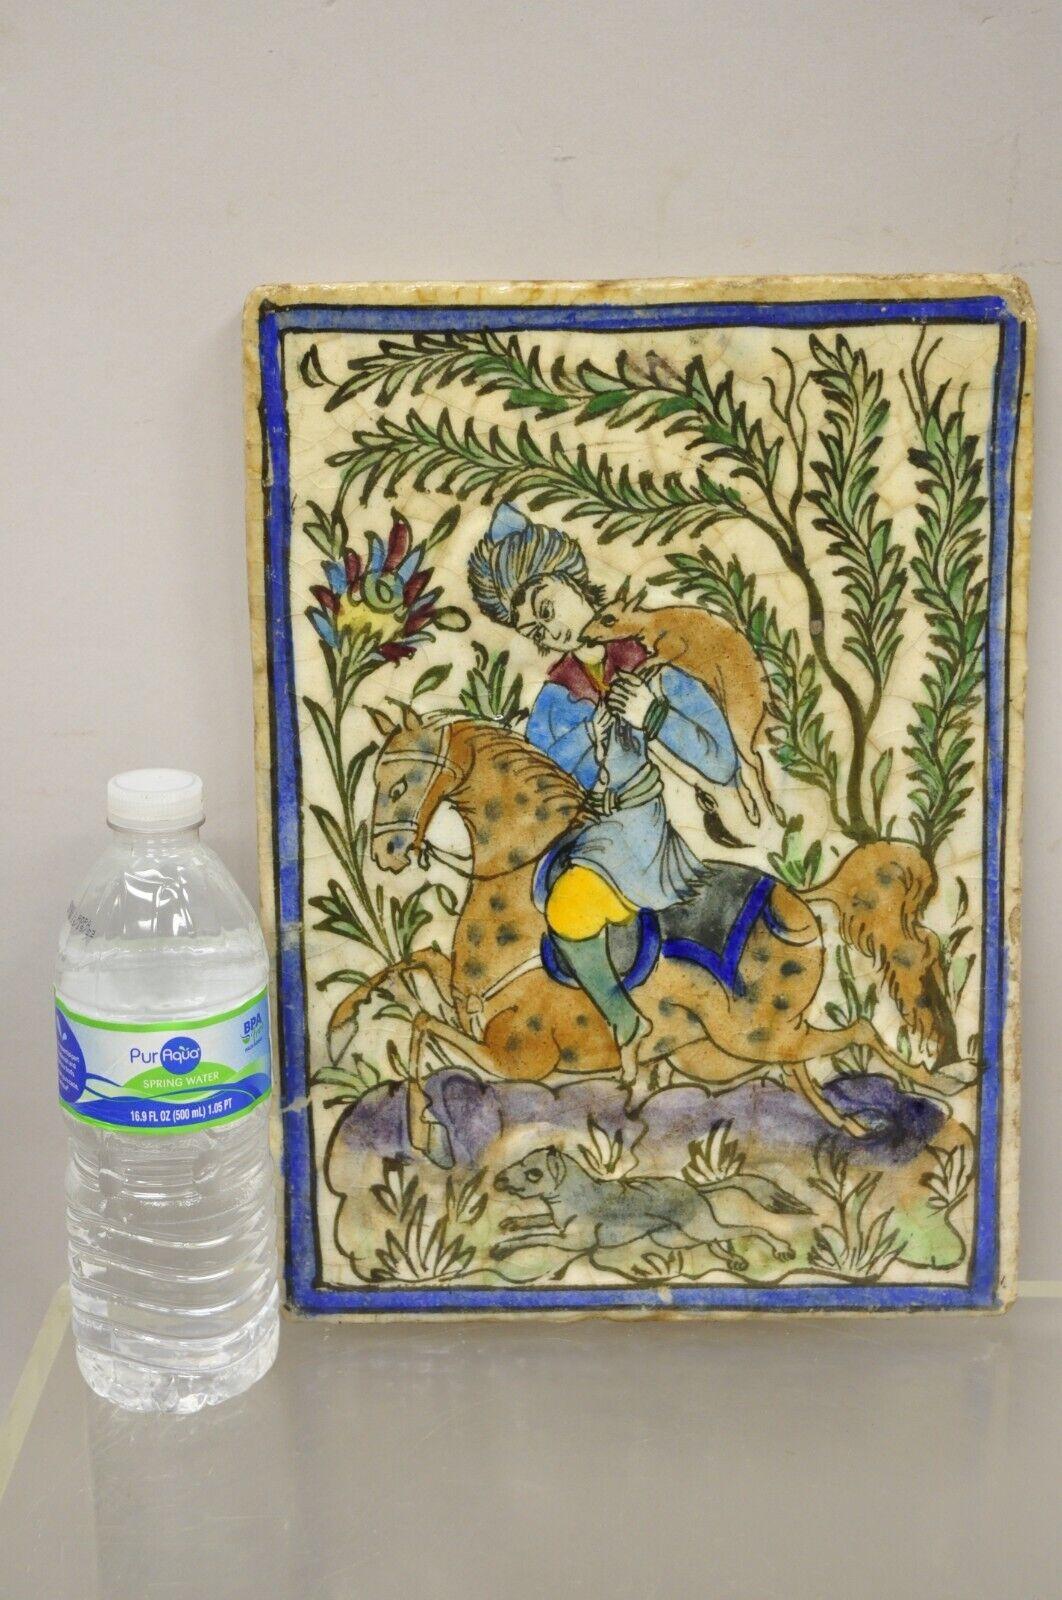 Antike persische Iznik Qajar-Stil Keramik Keramikfliese Pferd und Reiter Jagd Szene C1. Originale Craquelé-Glasur, schwere Keramikkonstruktion, sehr beeindruckende Details, wunderbarer Stil und Form. Hervorragend geeignet für die Montage als